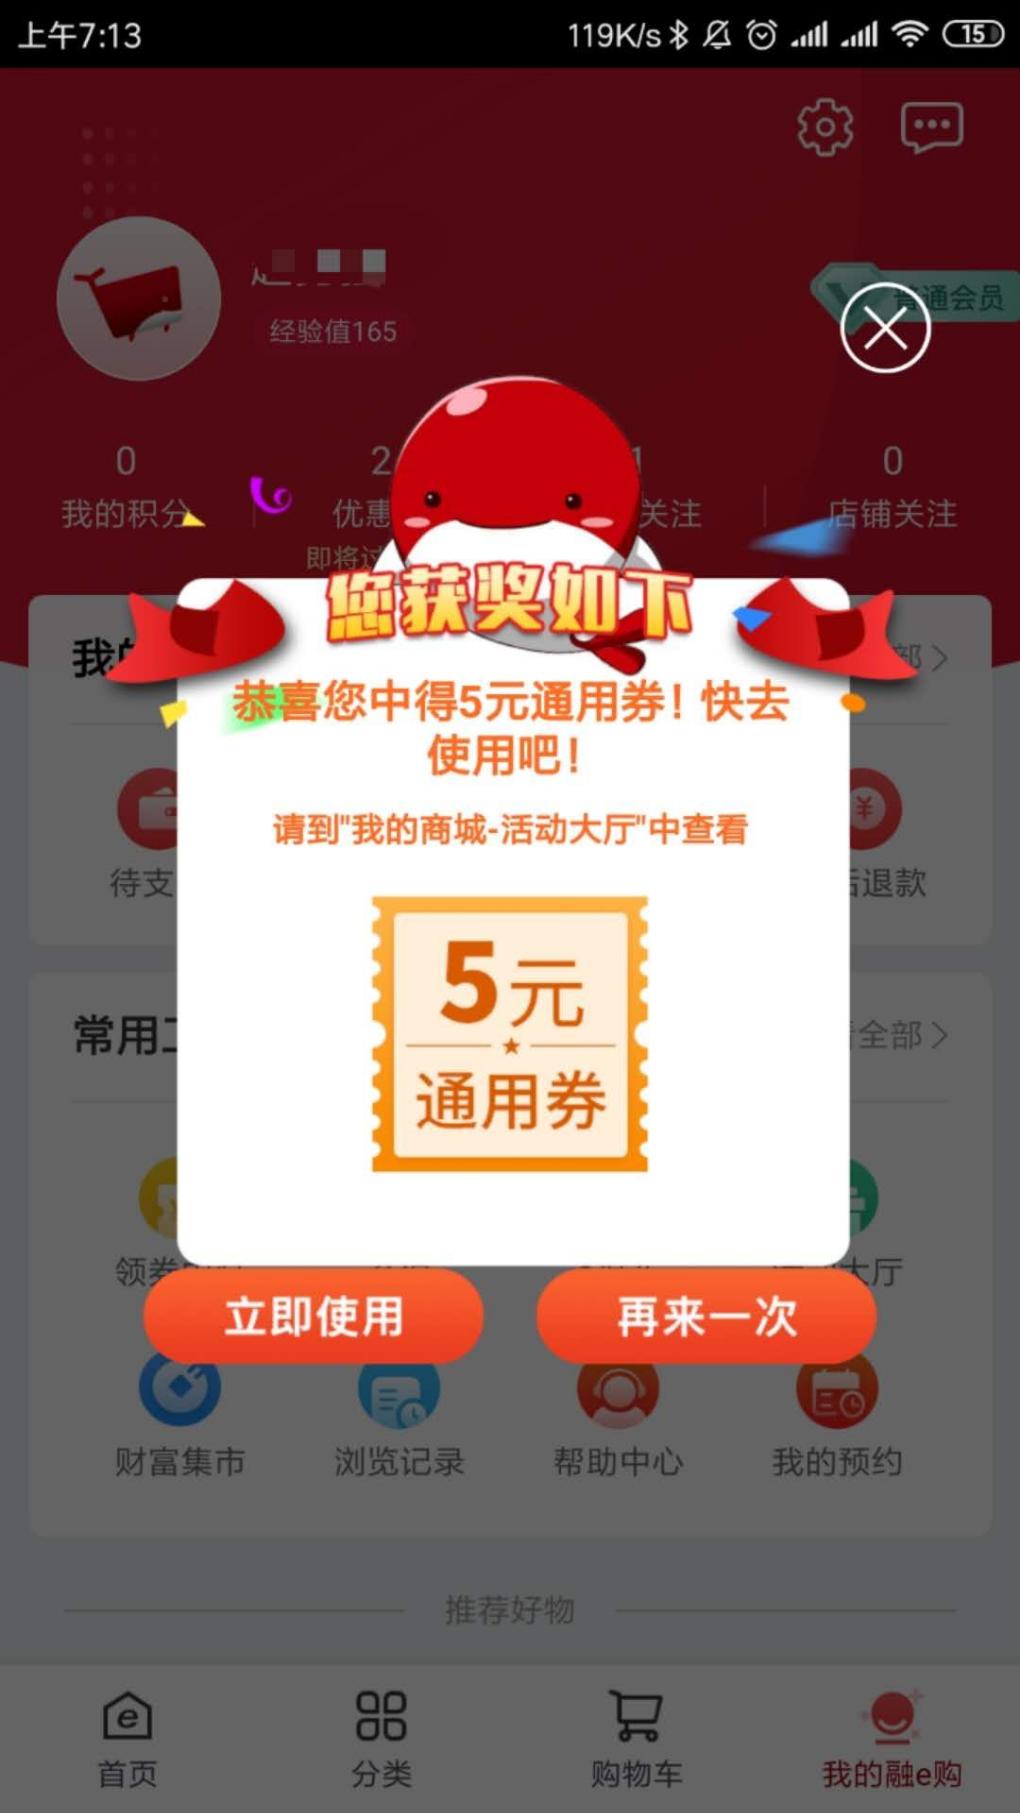 融e购-新一周5元-惠小助(52huixz.com)